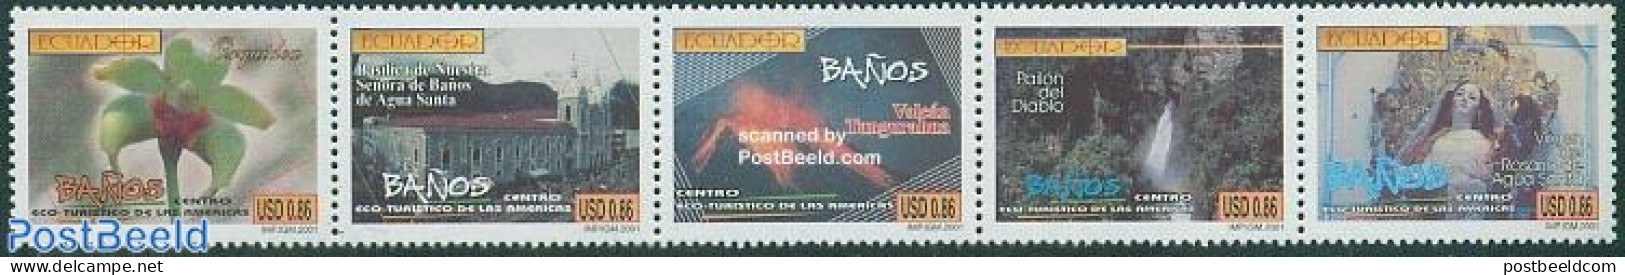 Ecuador 2001 Banos 5v [::::], Mint NH, History - Nature - Geology - Orchids - Water, Dams & Falls - Ecuador